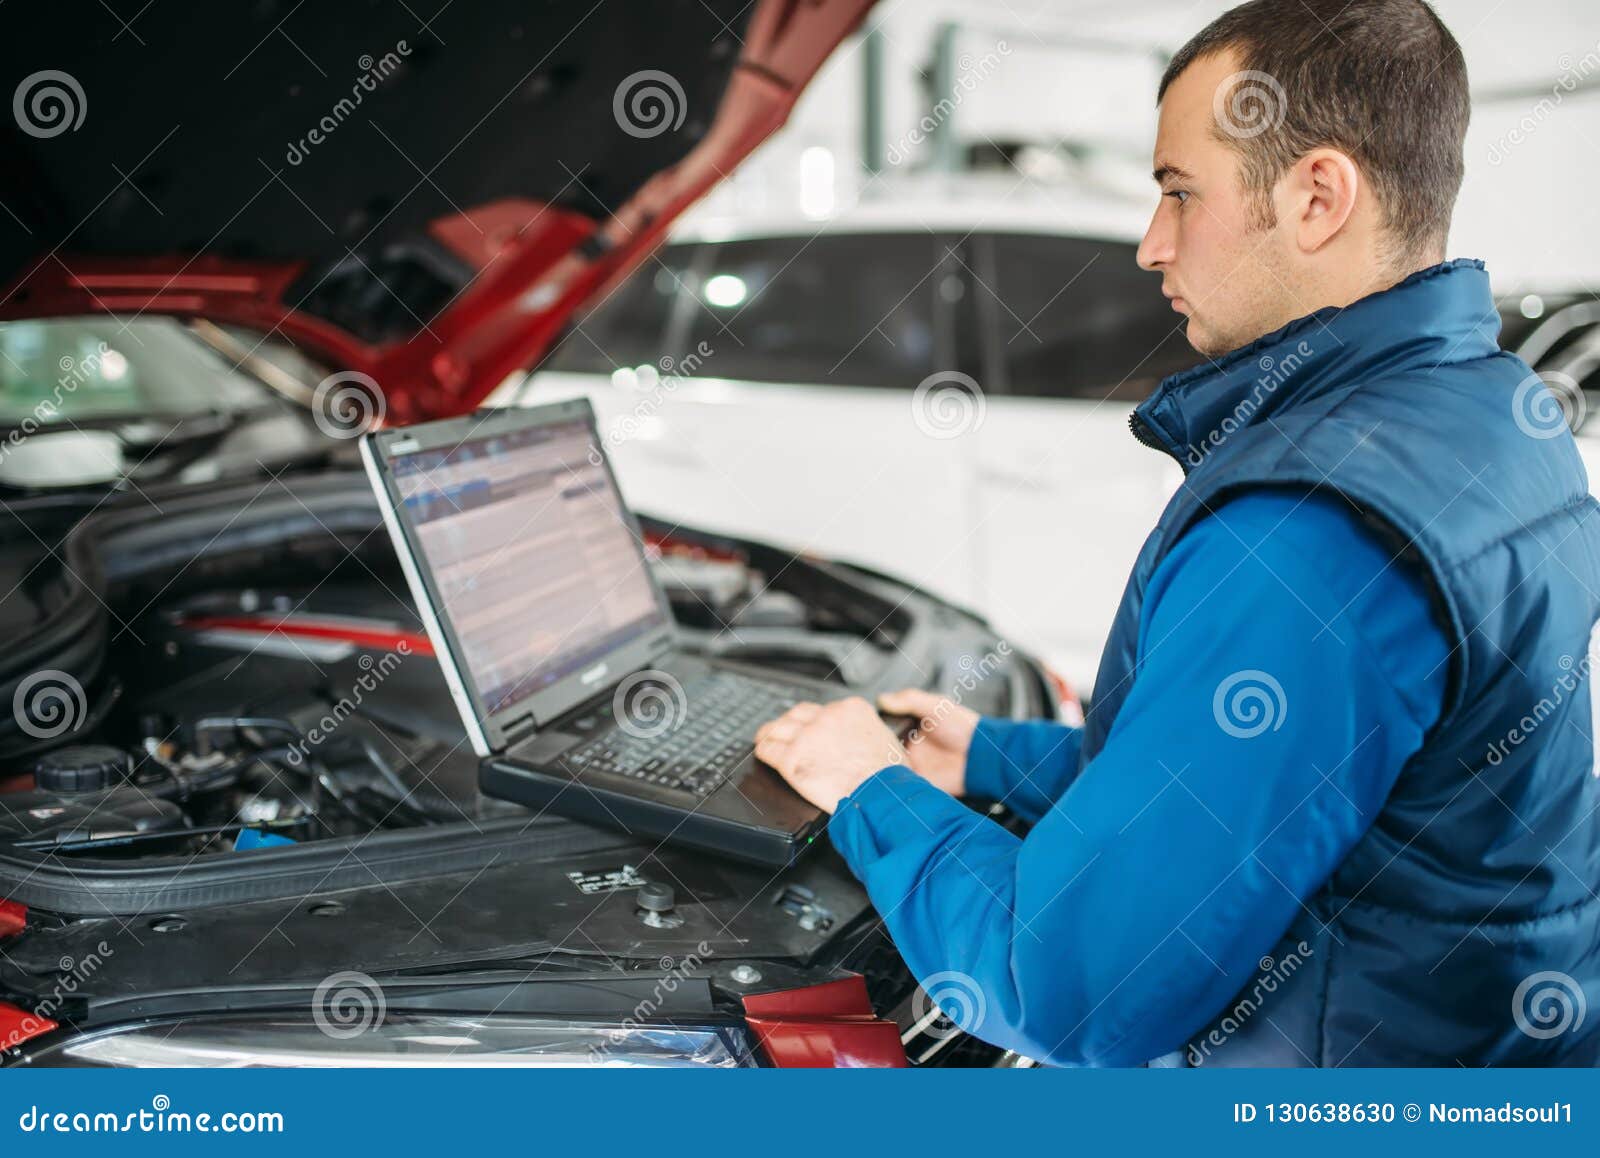 Vooruitzien Geneeskunde zingen Computer Diagnostics of the Car in Auto-service Stock Photo - Image of  industry, repair: 130638630